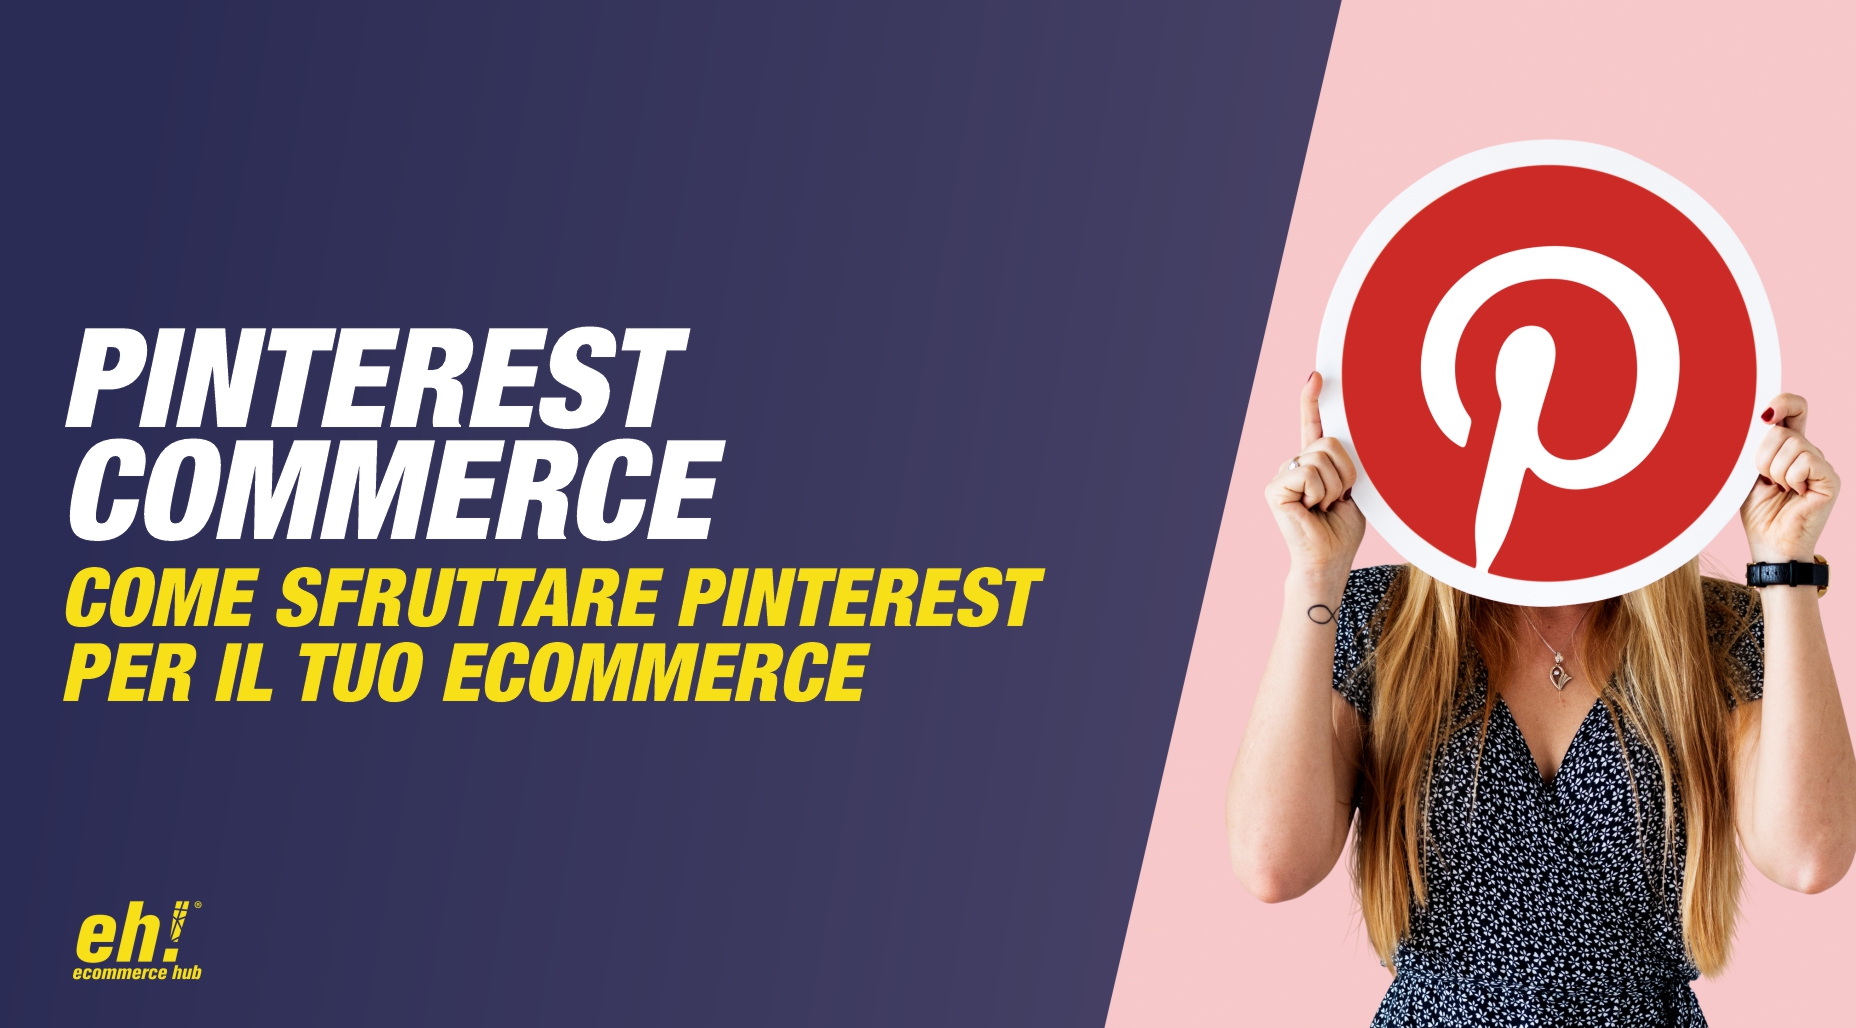 pinterest commerce - come sfruttare pinterest per il tuo ecommerce